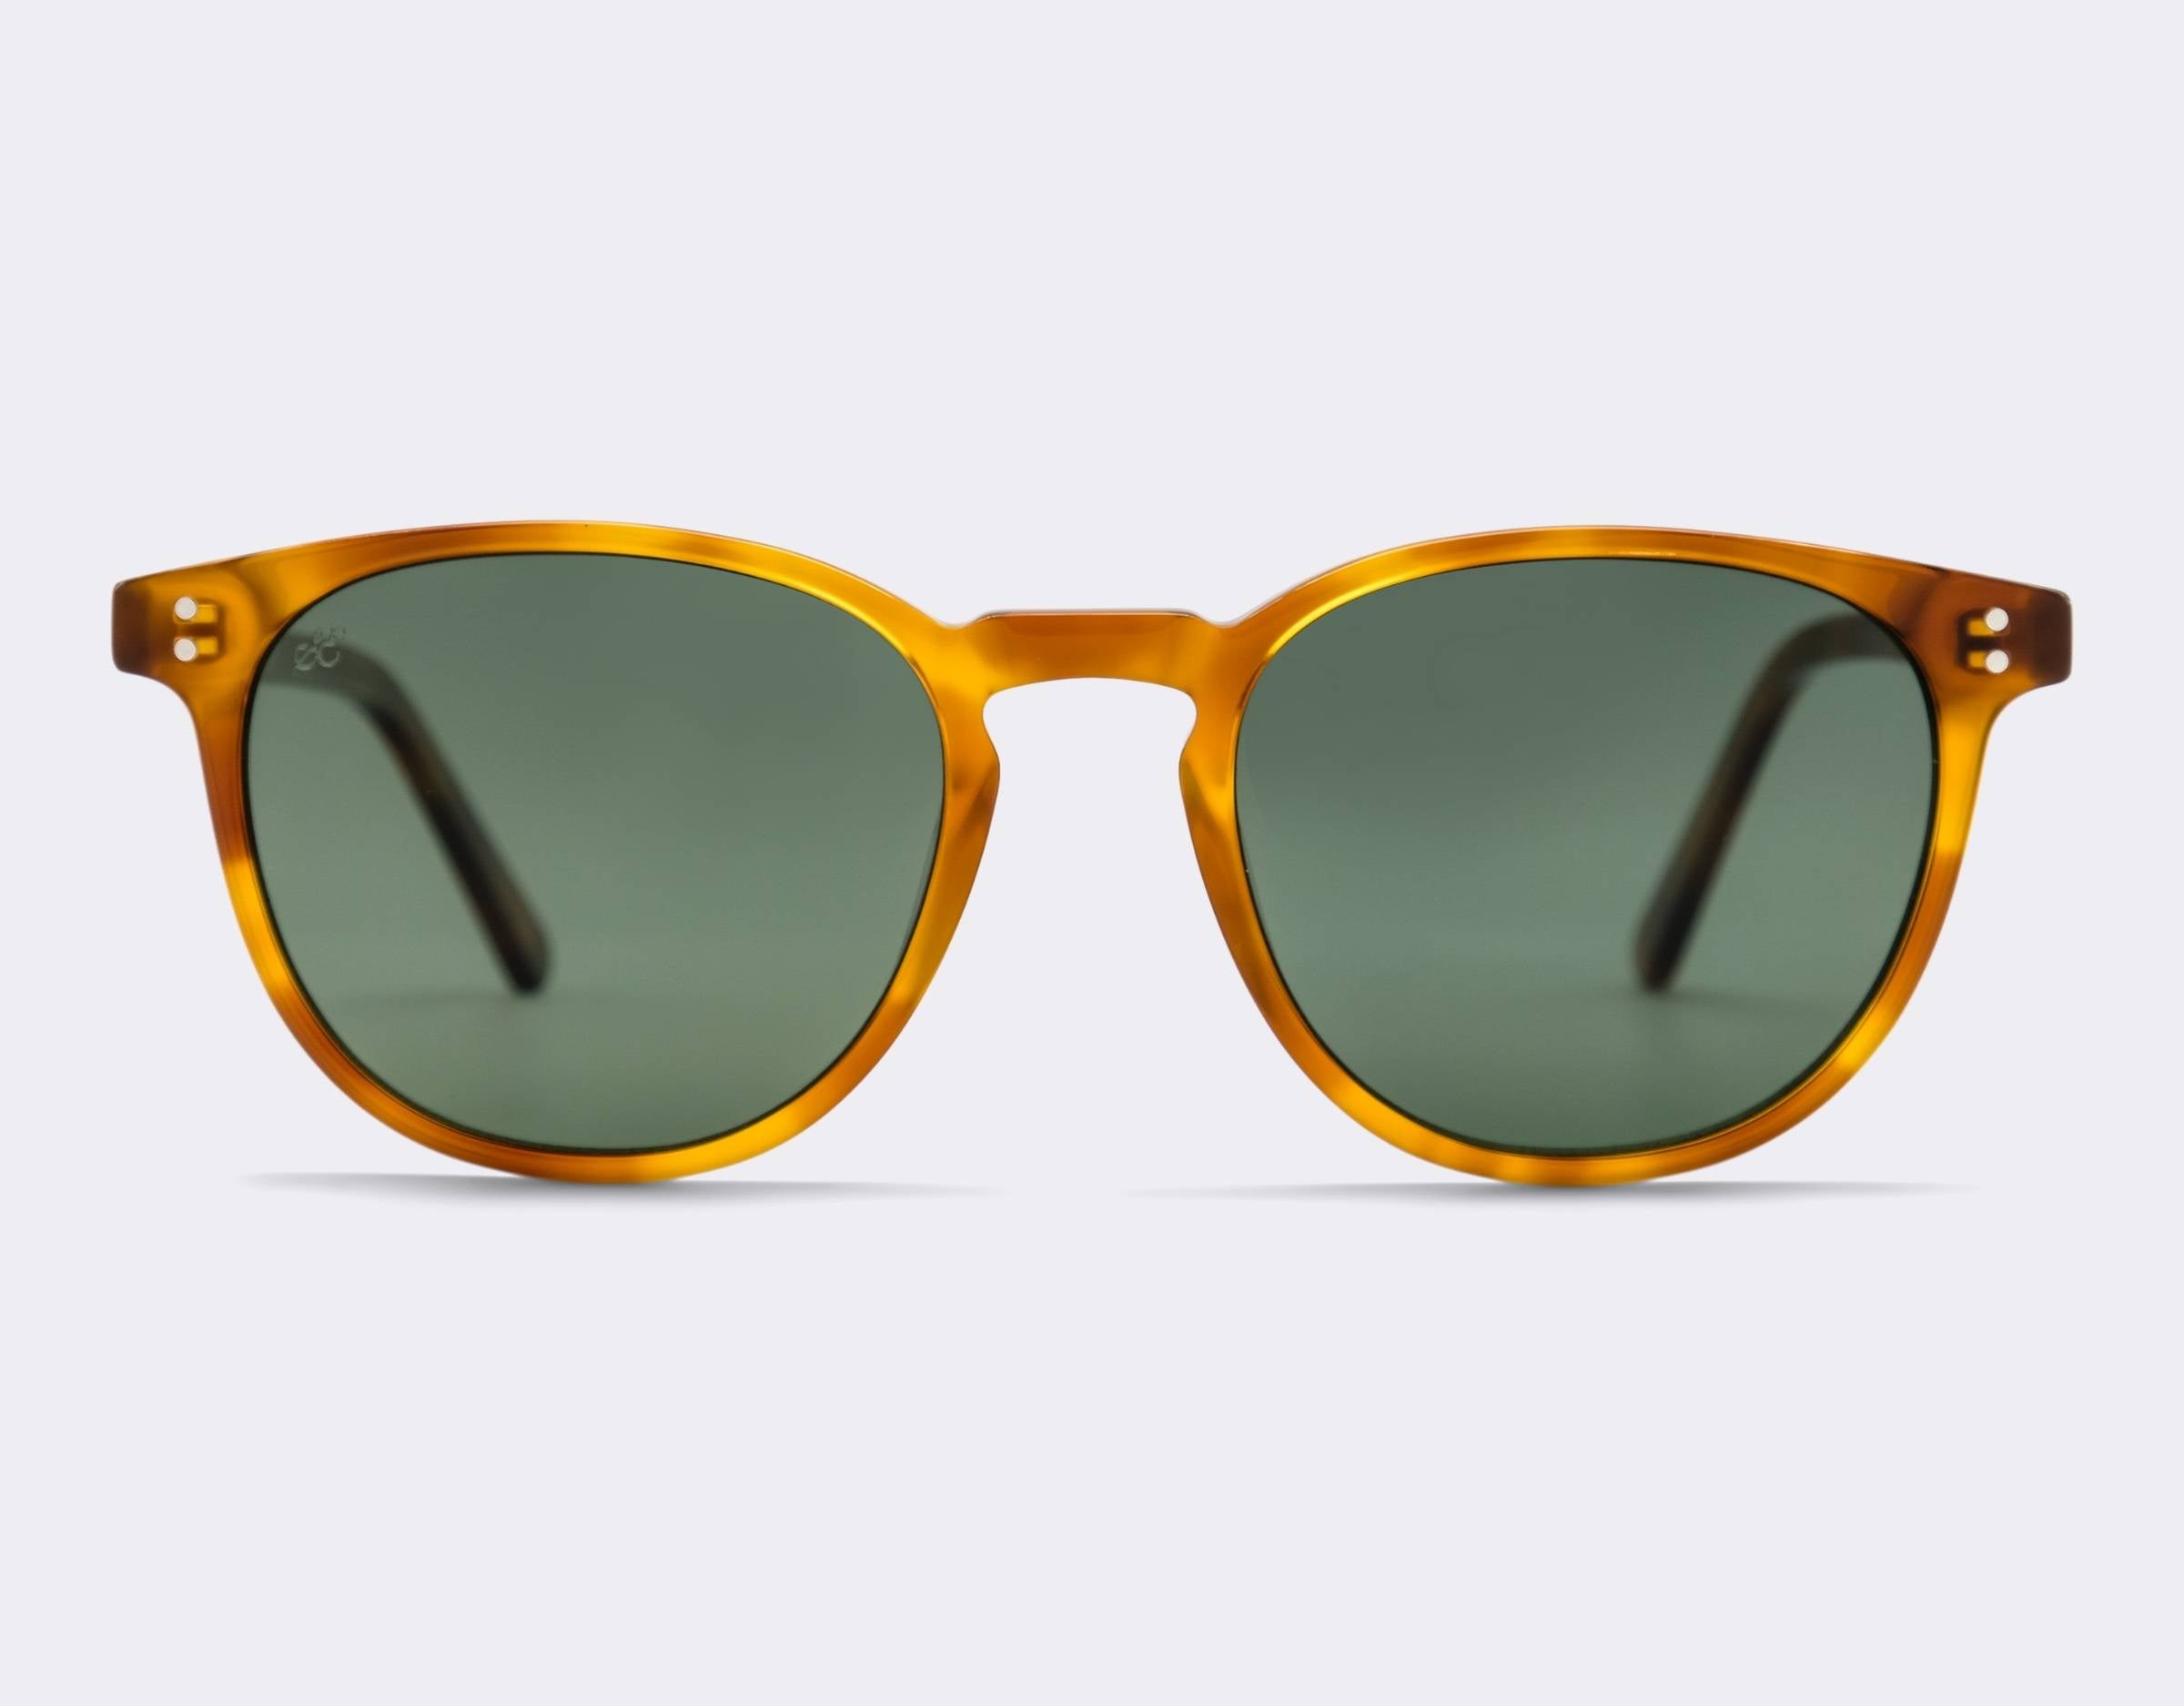 Glenelg Polarised Sunglasses SummerEyez Honeycomb - Olive Green 